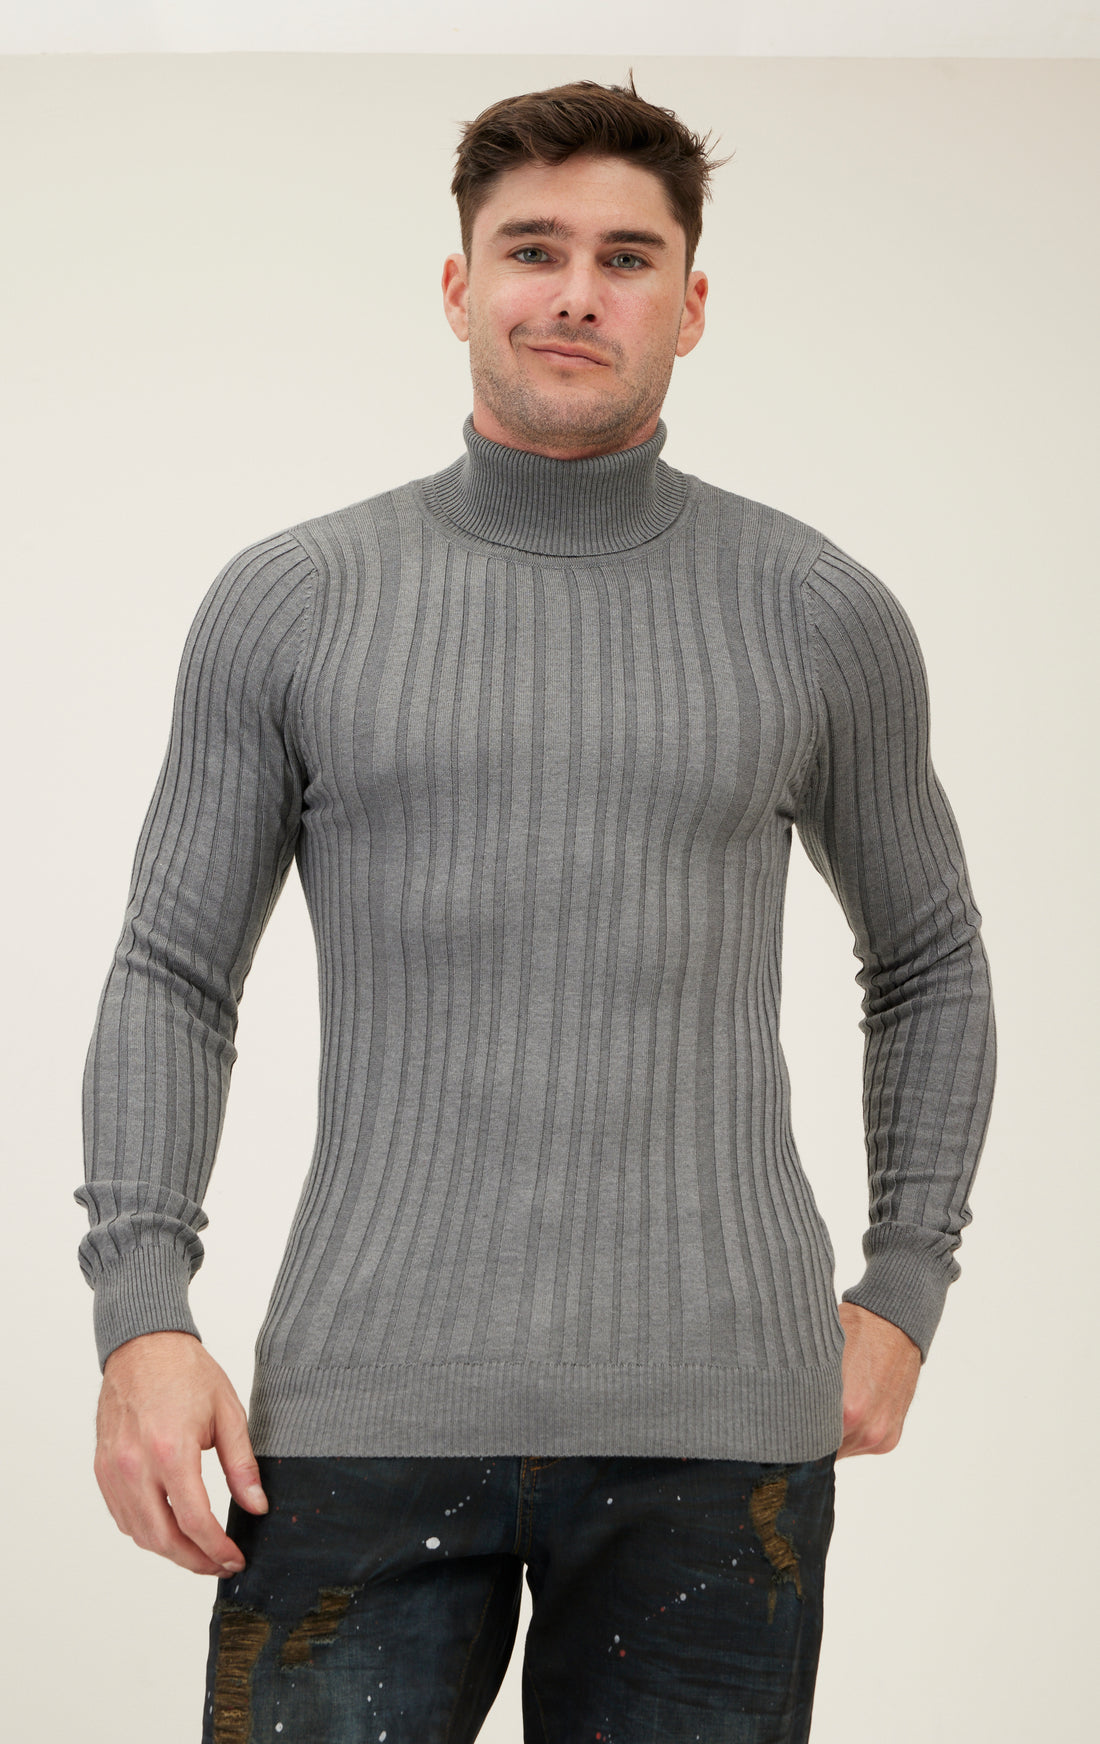 Ребристый свитер с круглым вырезом - серый